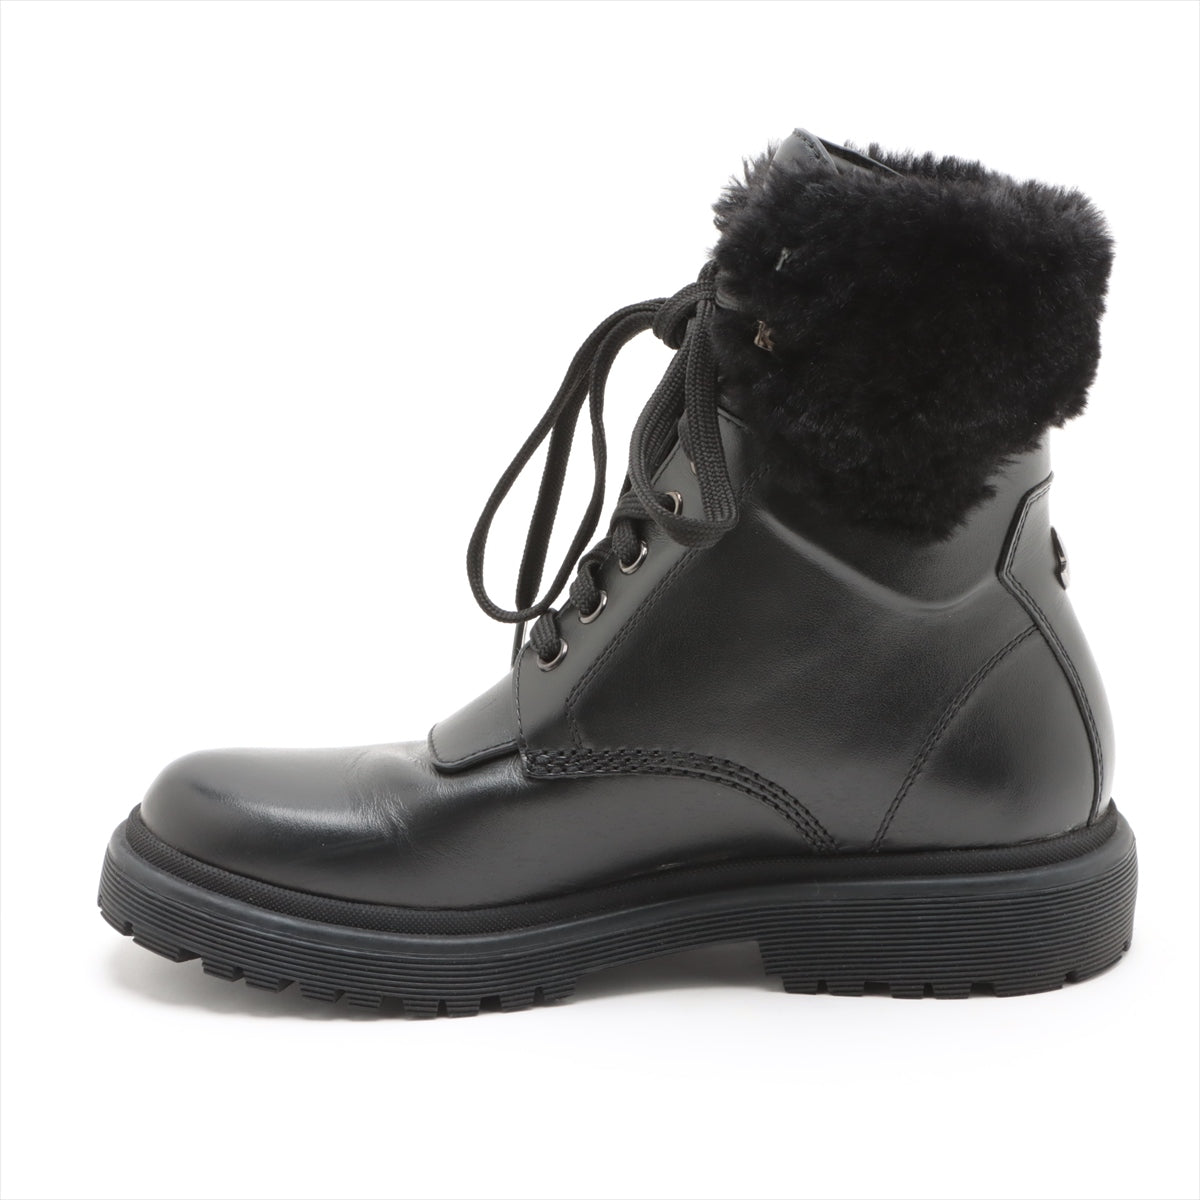 Moncler Leather Short Boots 36 Ladies' Black PATTY Faux fur